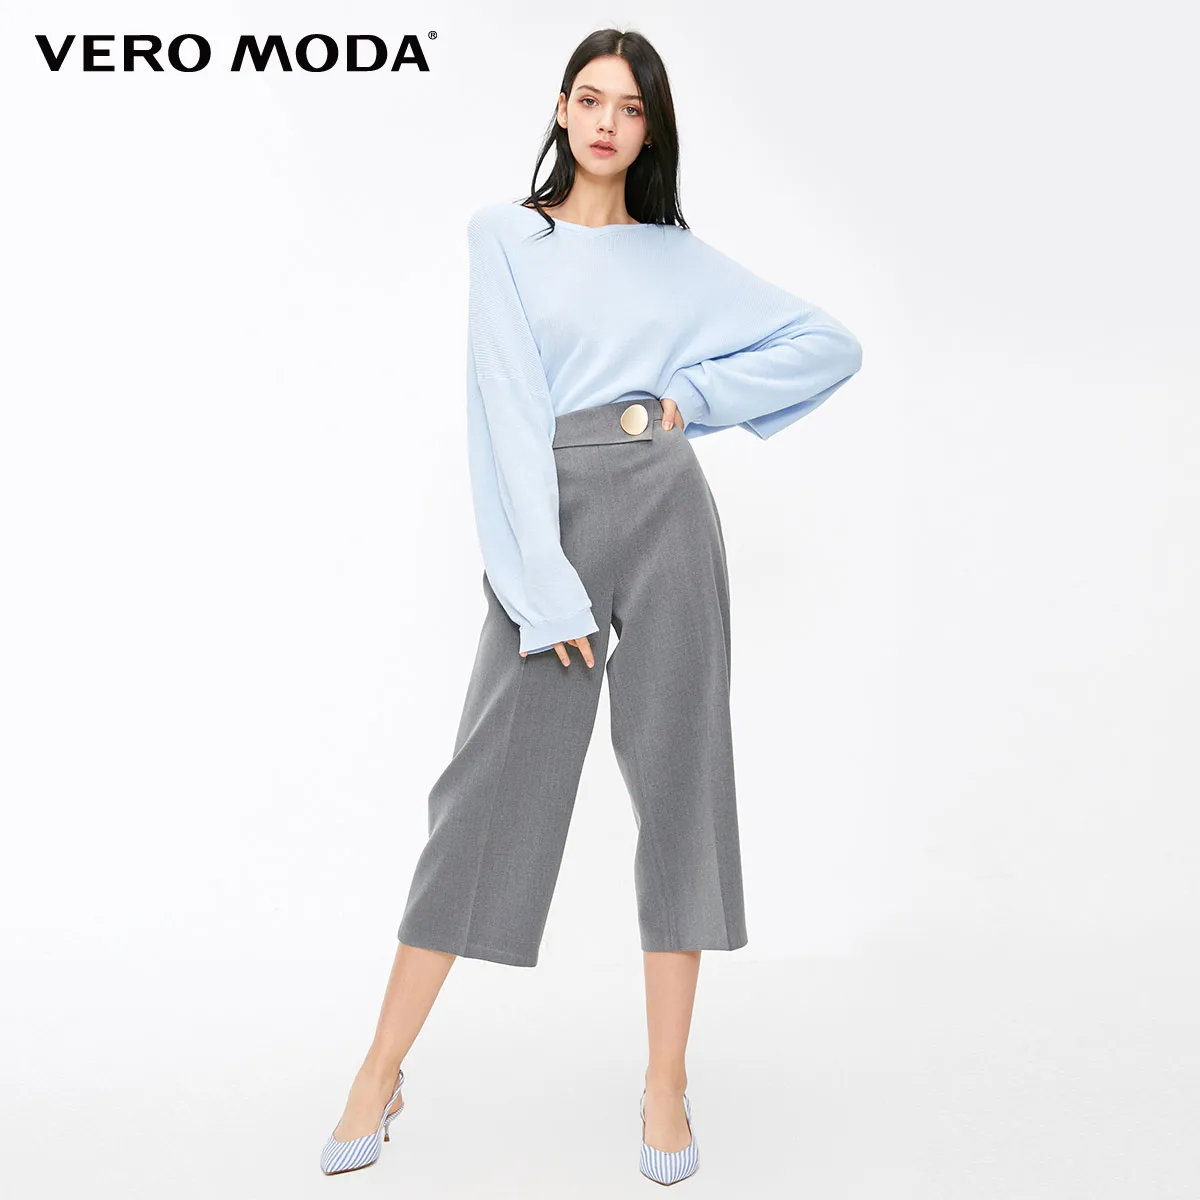 Vero Moda новые женские свободные декоративные пуговицы широкие брюки Капри | 31836J521 - Цвет: Granit mel.